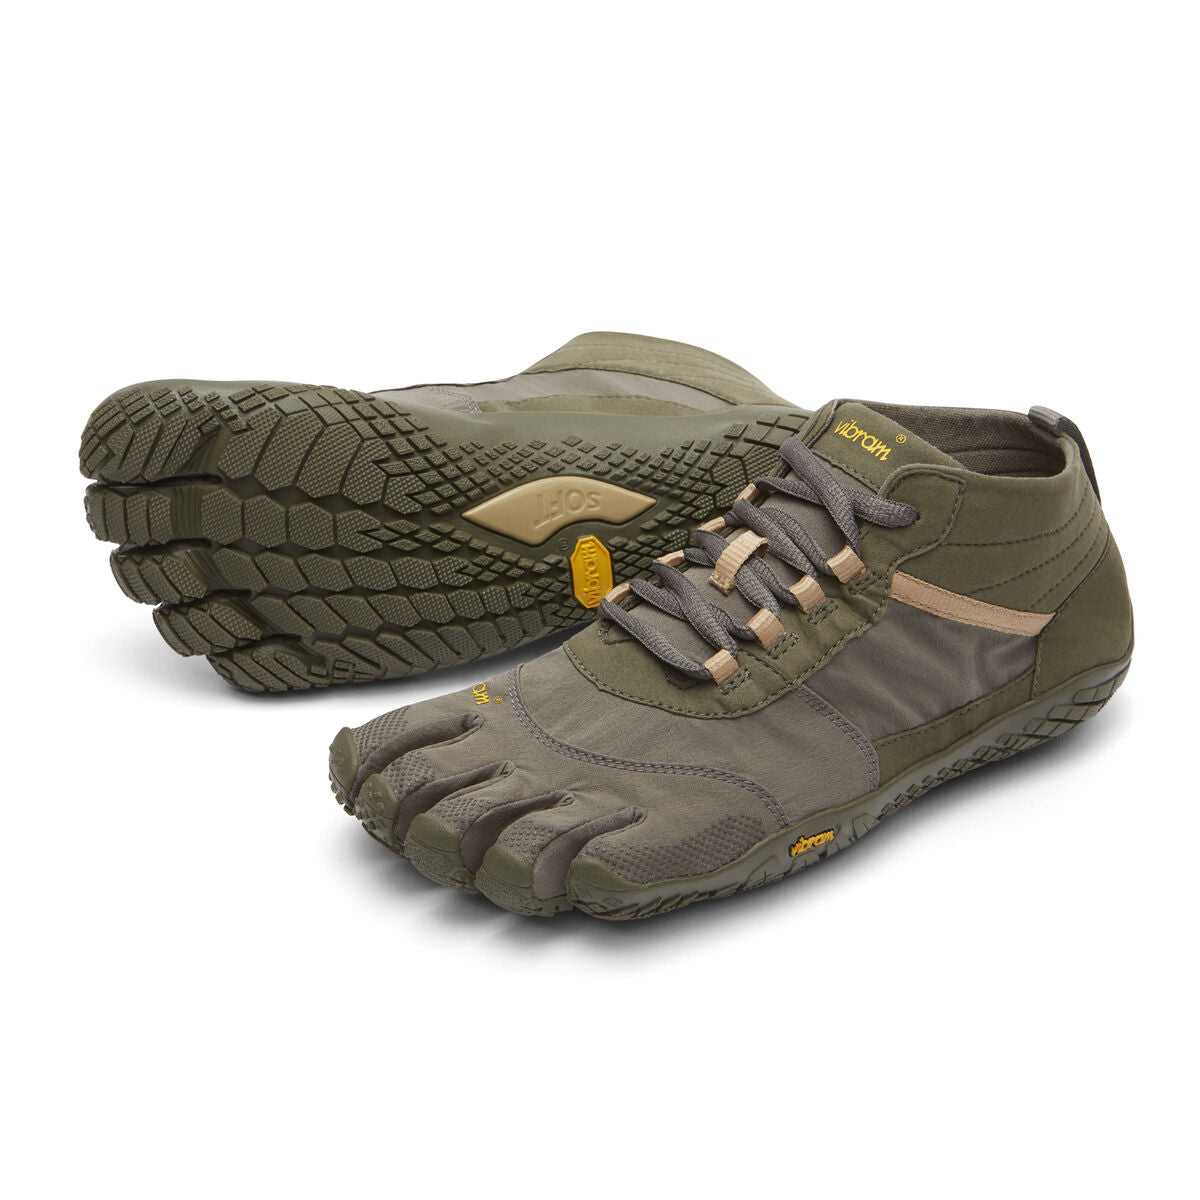 Men's Vibram Five Fingers V-Trek Hiking Shoe in Military/Dark Grey from the front